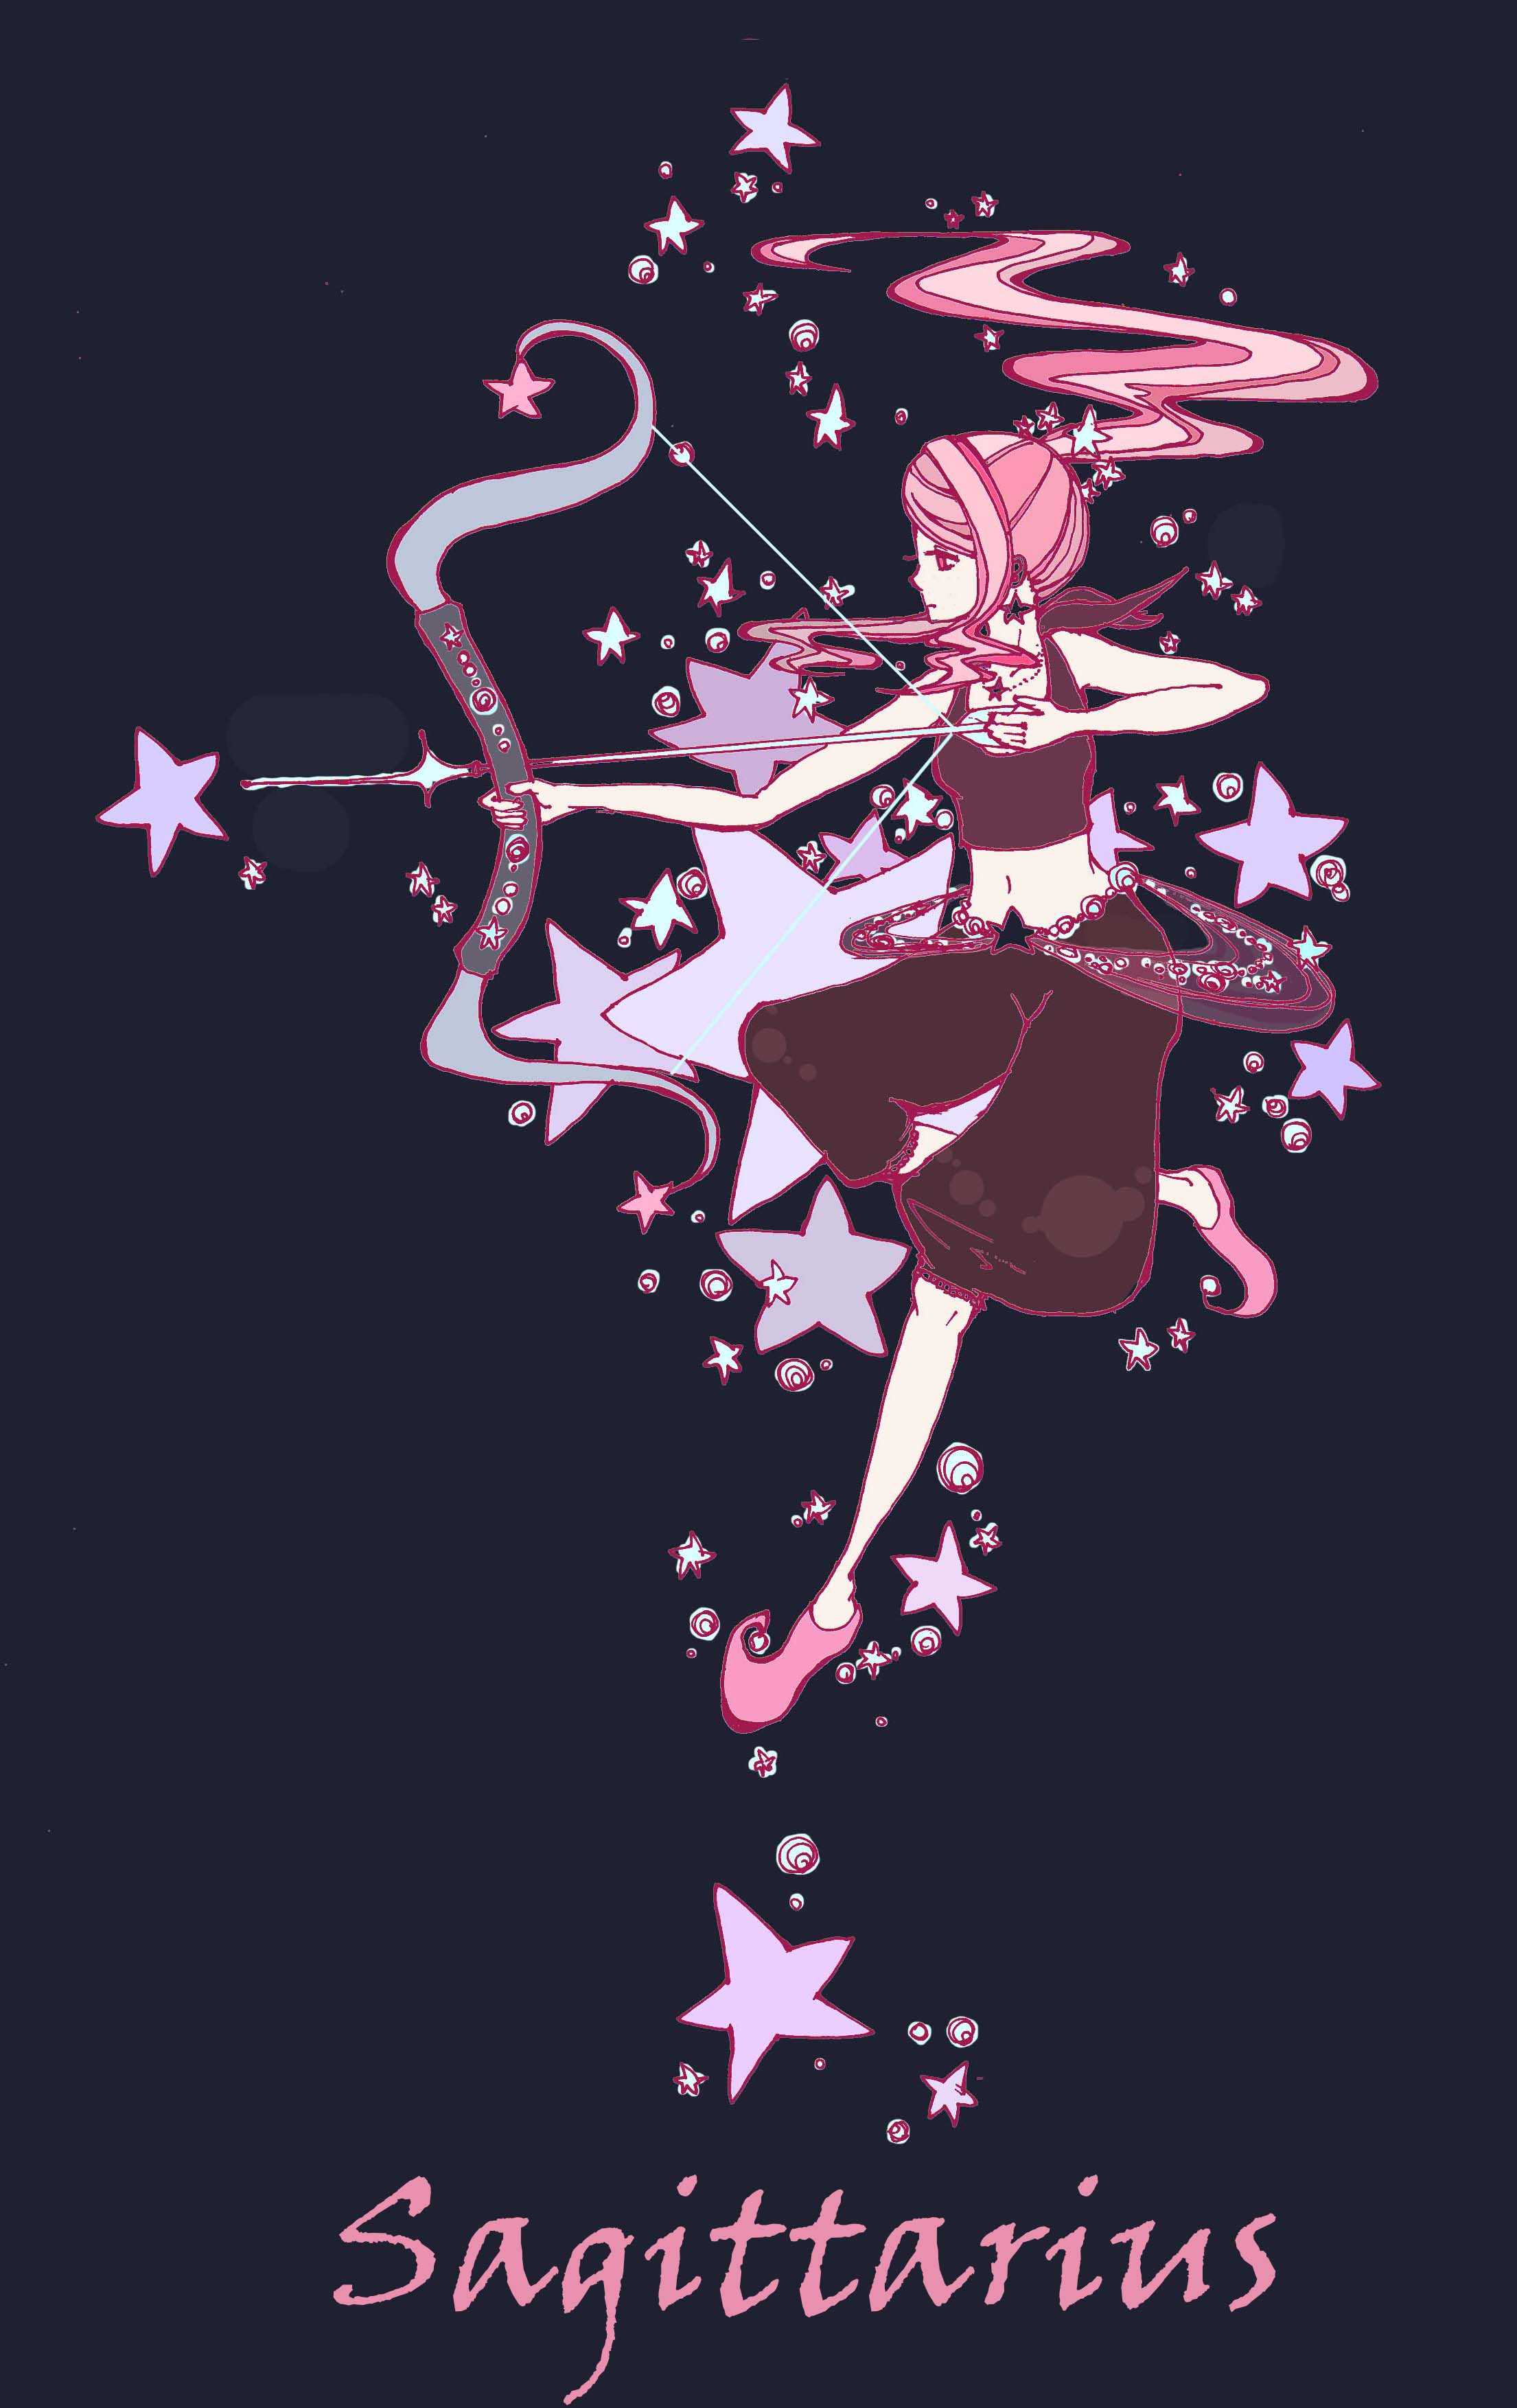 A girl with a bow and arrow - Sagittarius